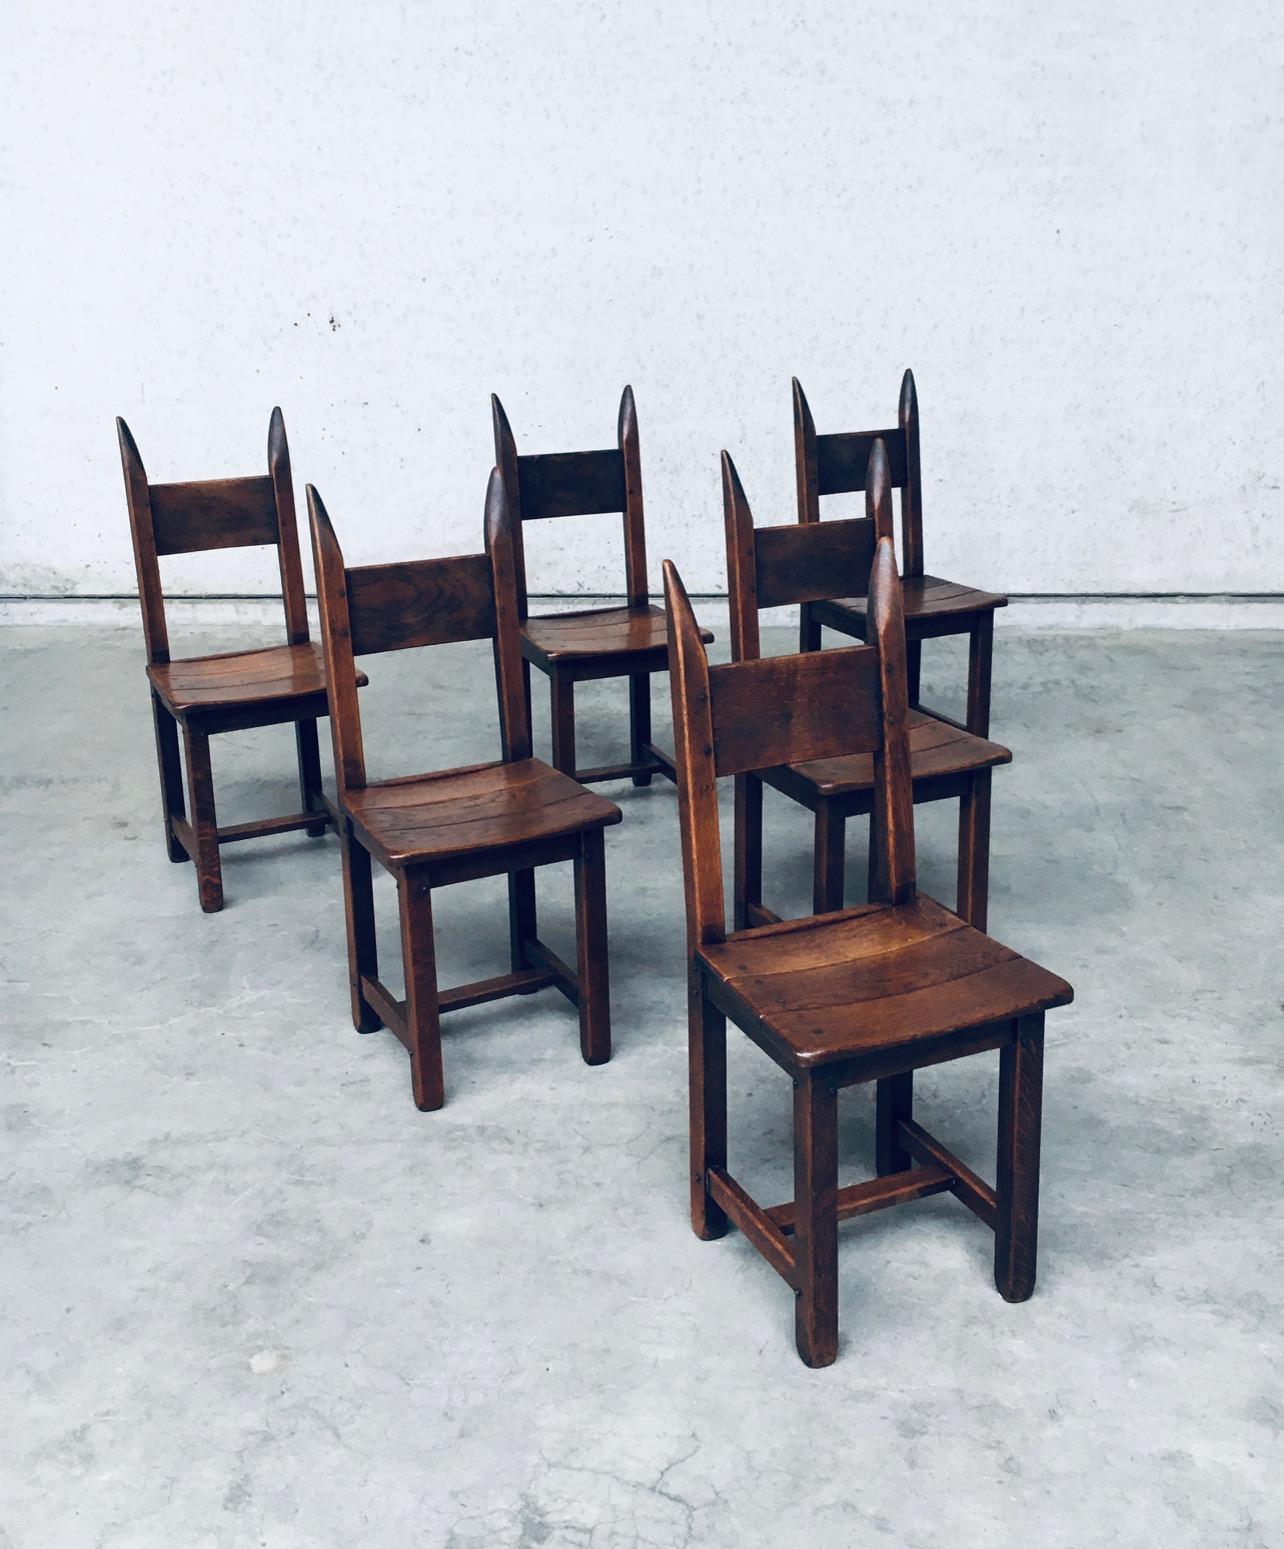 Vintage Brutalist Design Stil Eiche Esszimmerstuhl Satz von 6. Hergestellt in Frankreich, 1960er Jahre Zeitraum. Massive Eiche konstruiert Stühle mit sehr schönen dunklen Patina. Diese sind alle in sehr gutem, originalem Zustand. Jeder Stuhl misst